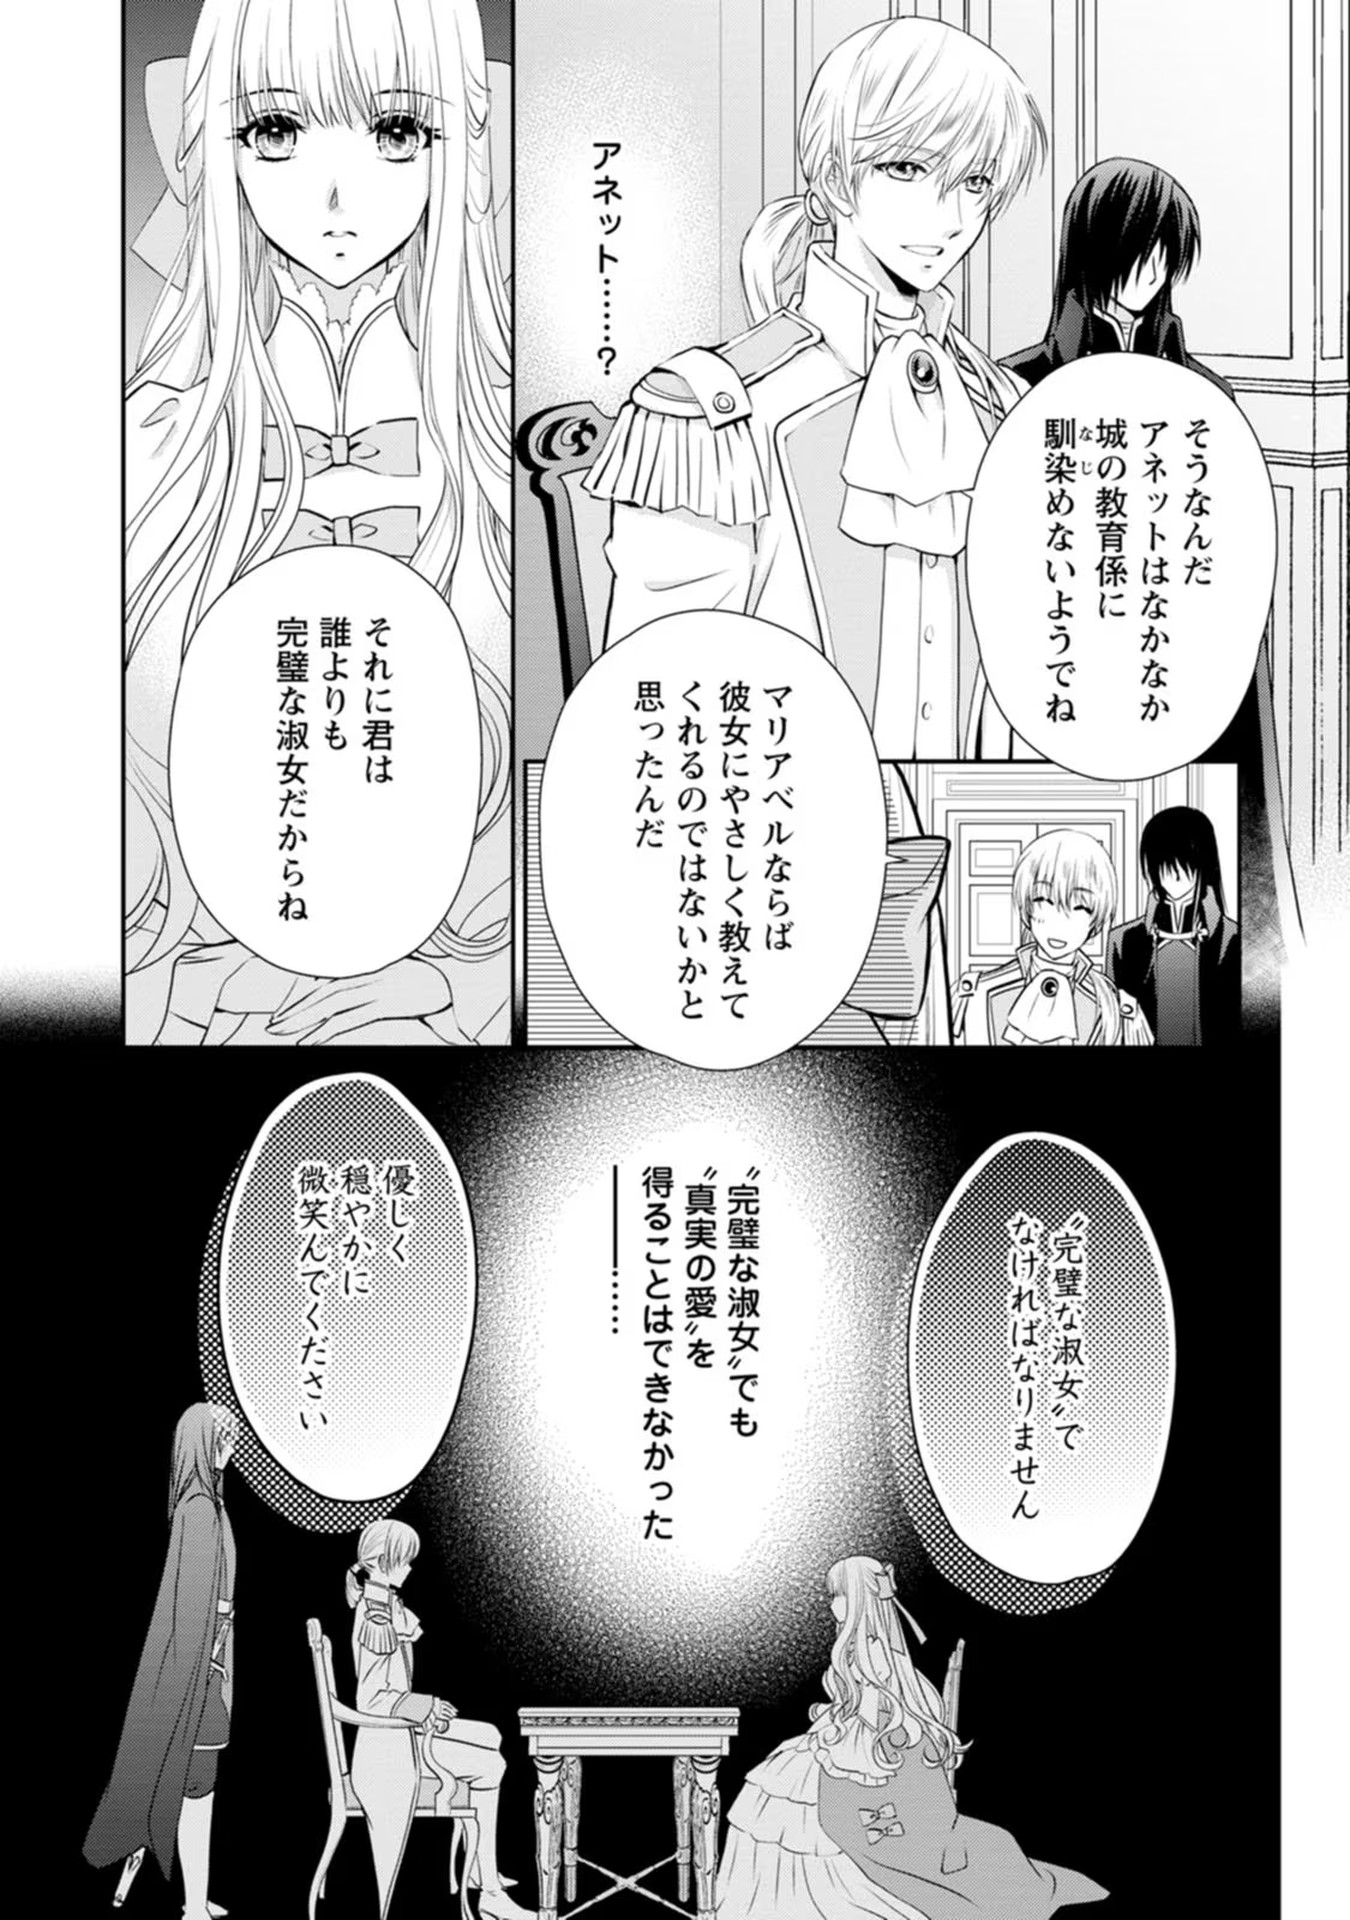 Shinjitsu no Ai wo Mitsuketa to Iwarete Konyaku Haki Saretanode, Fukuen wo Semararete mo Imasara mo Osoi desu! - Chapter 1 - Page 21